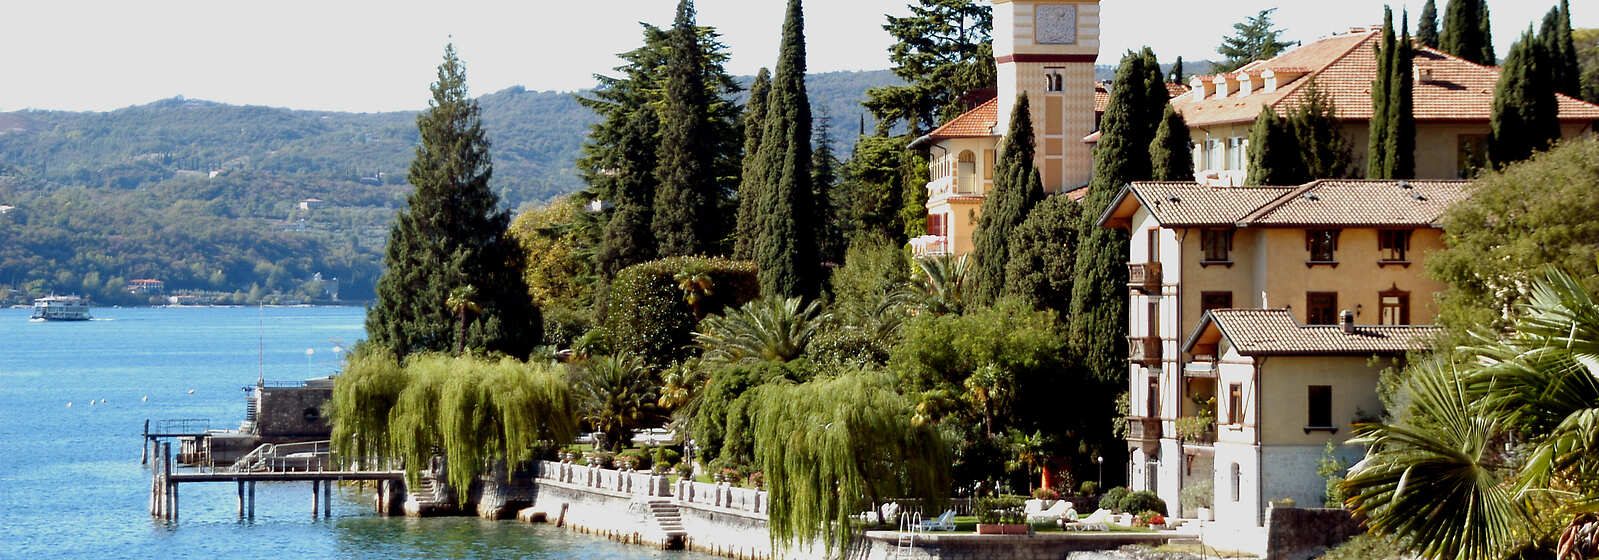 The Grand Hotel Fasano & Villa Principe from the lake water